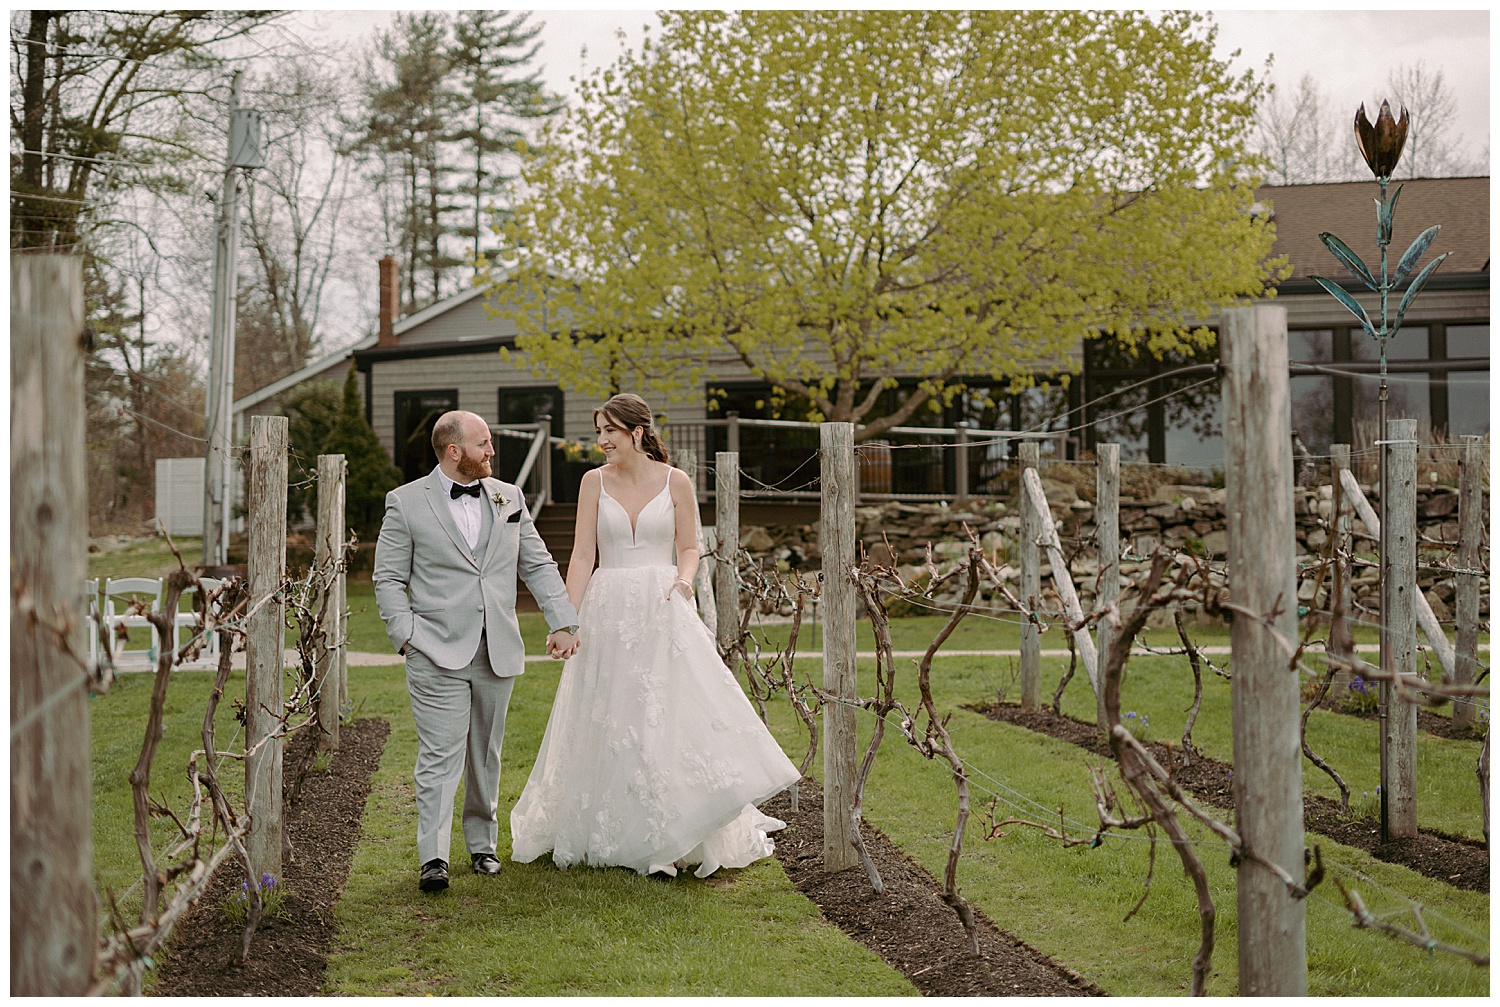 Elegant bride and groom photos in winery vineyards